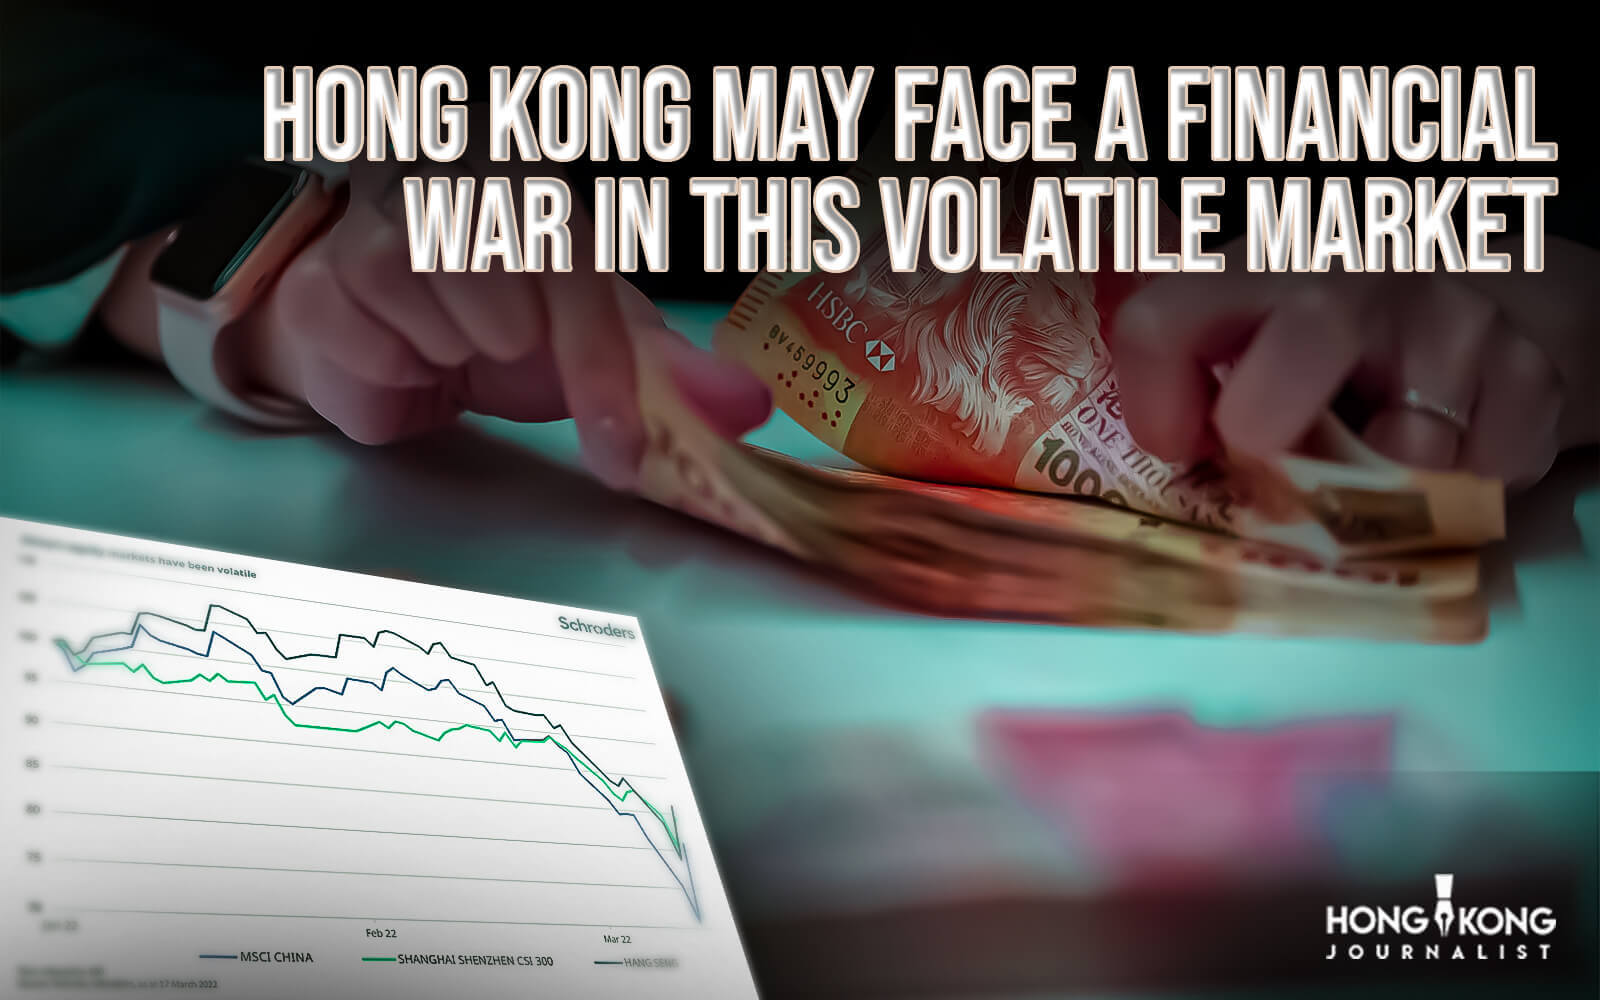 Hong Kong may face a financial